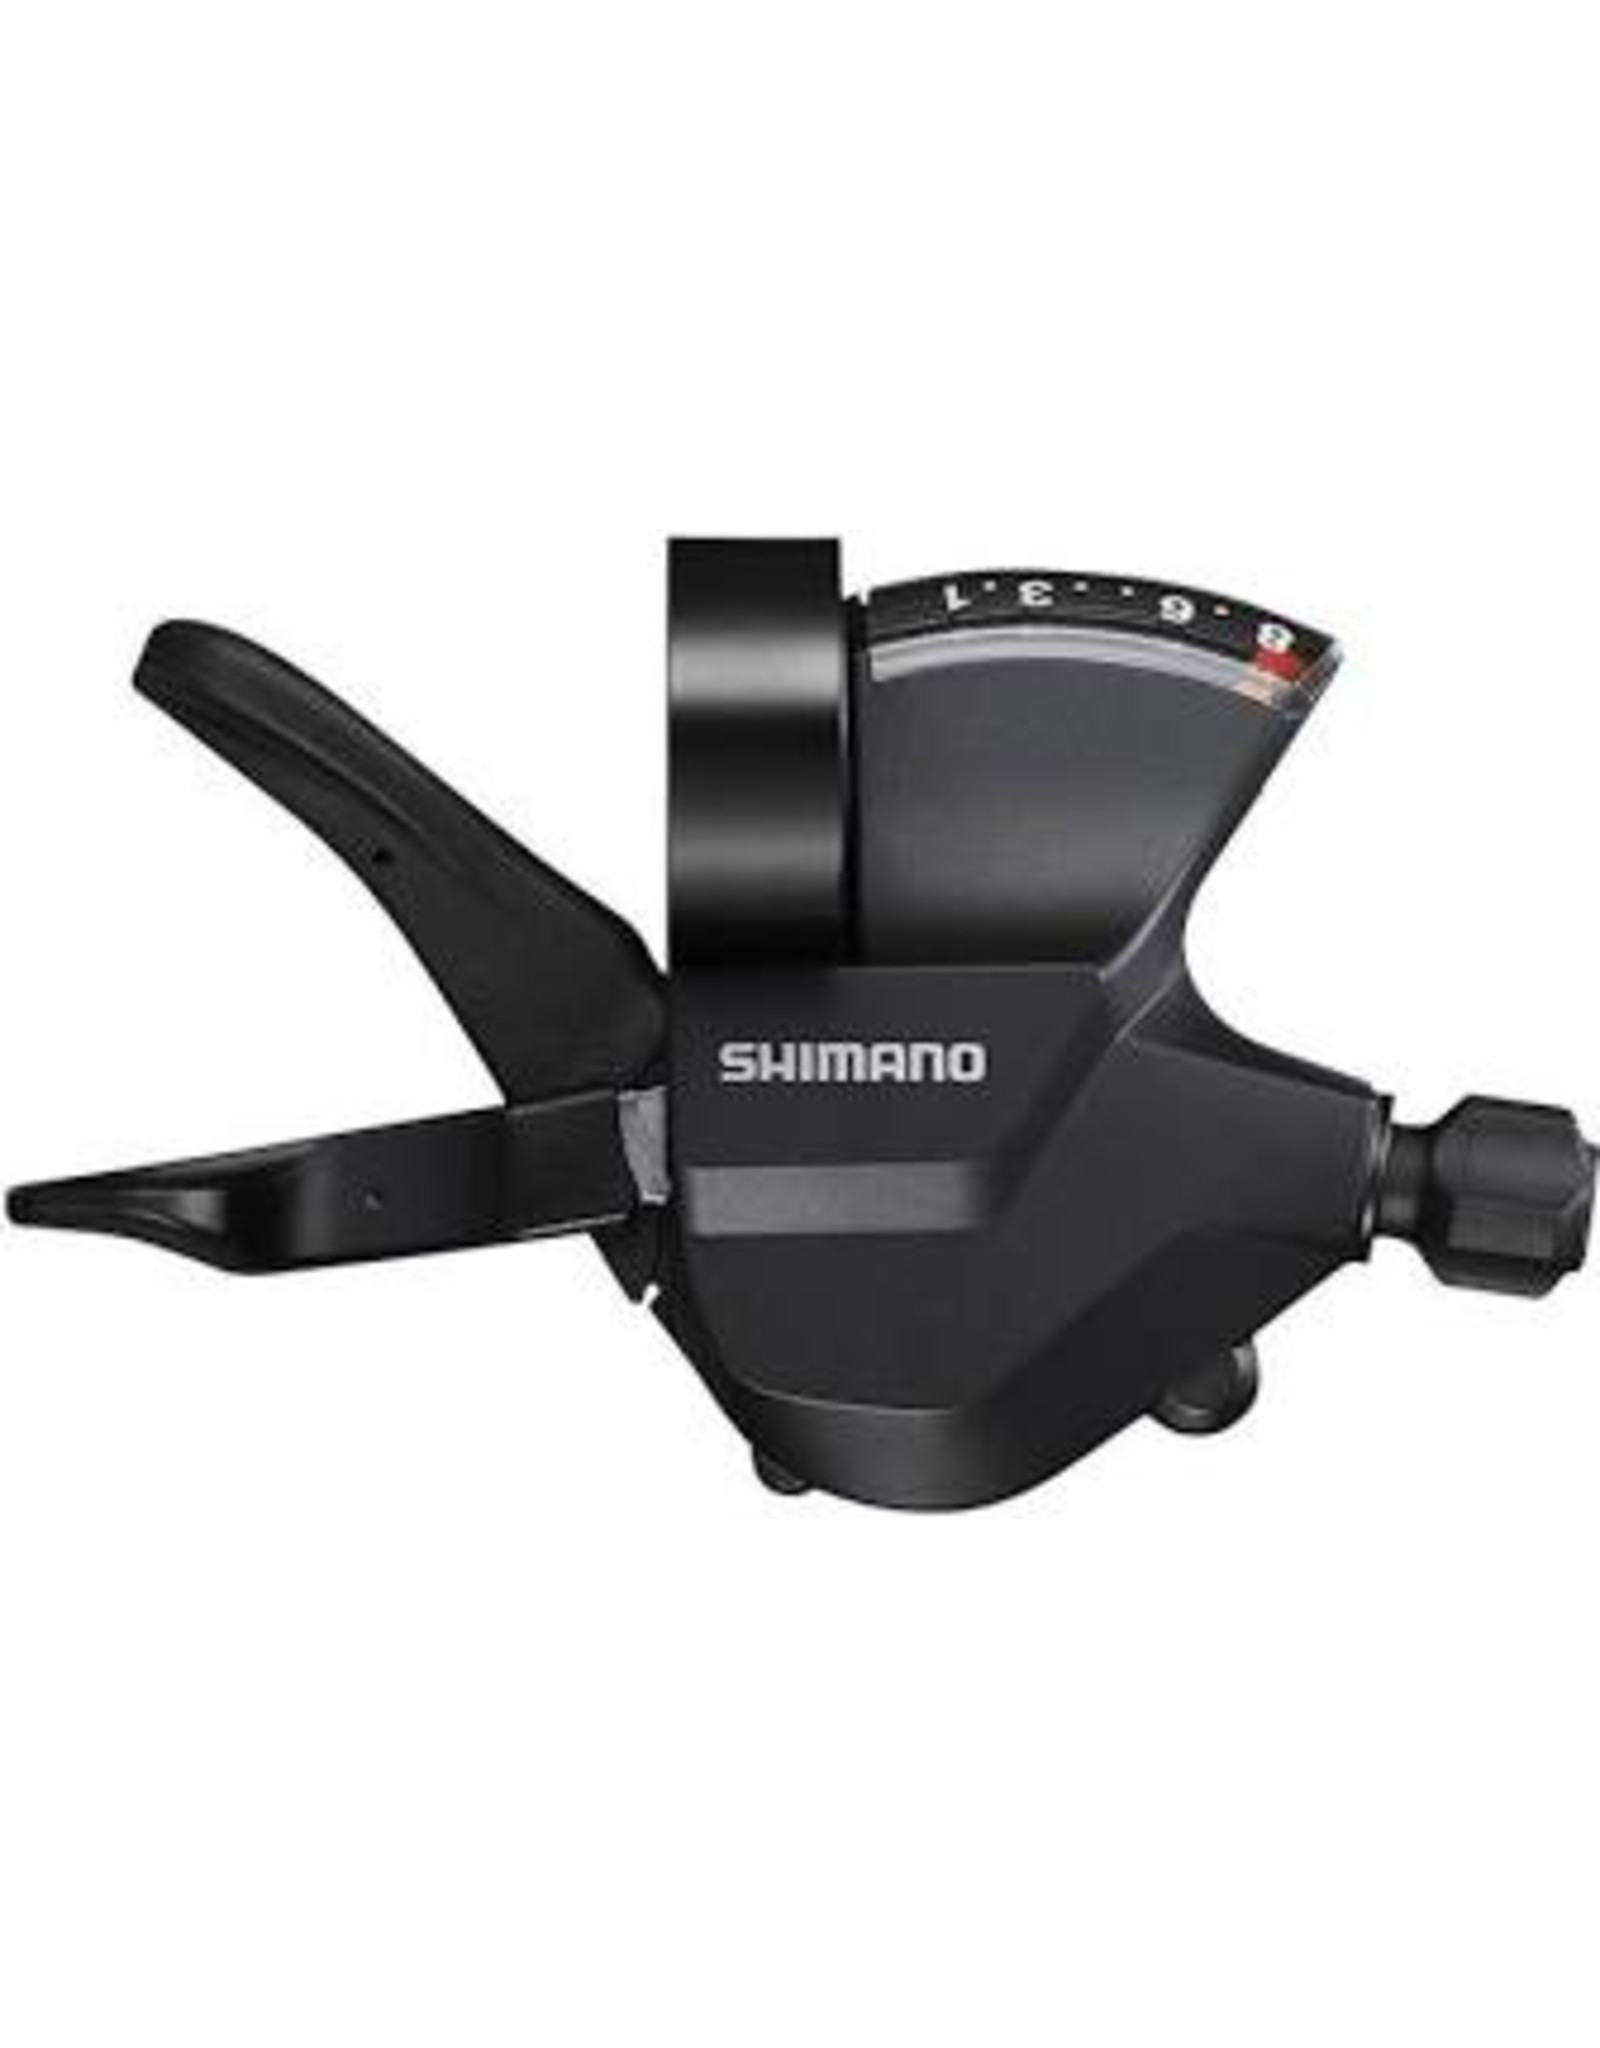 SHIMANO SHIMANO SL-M315 7 SPD SHIFTER